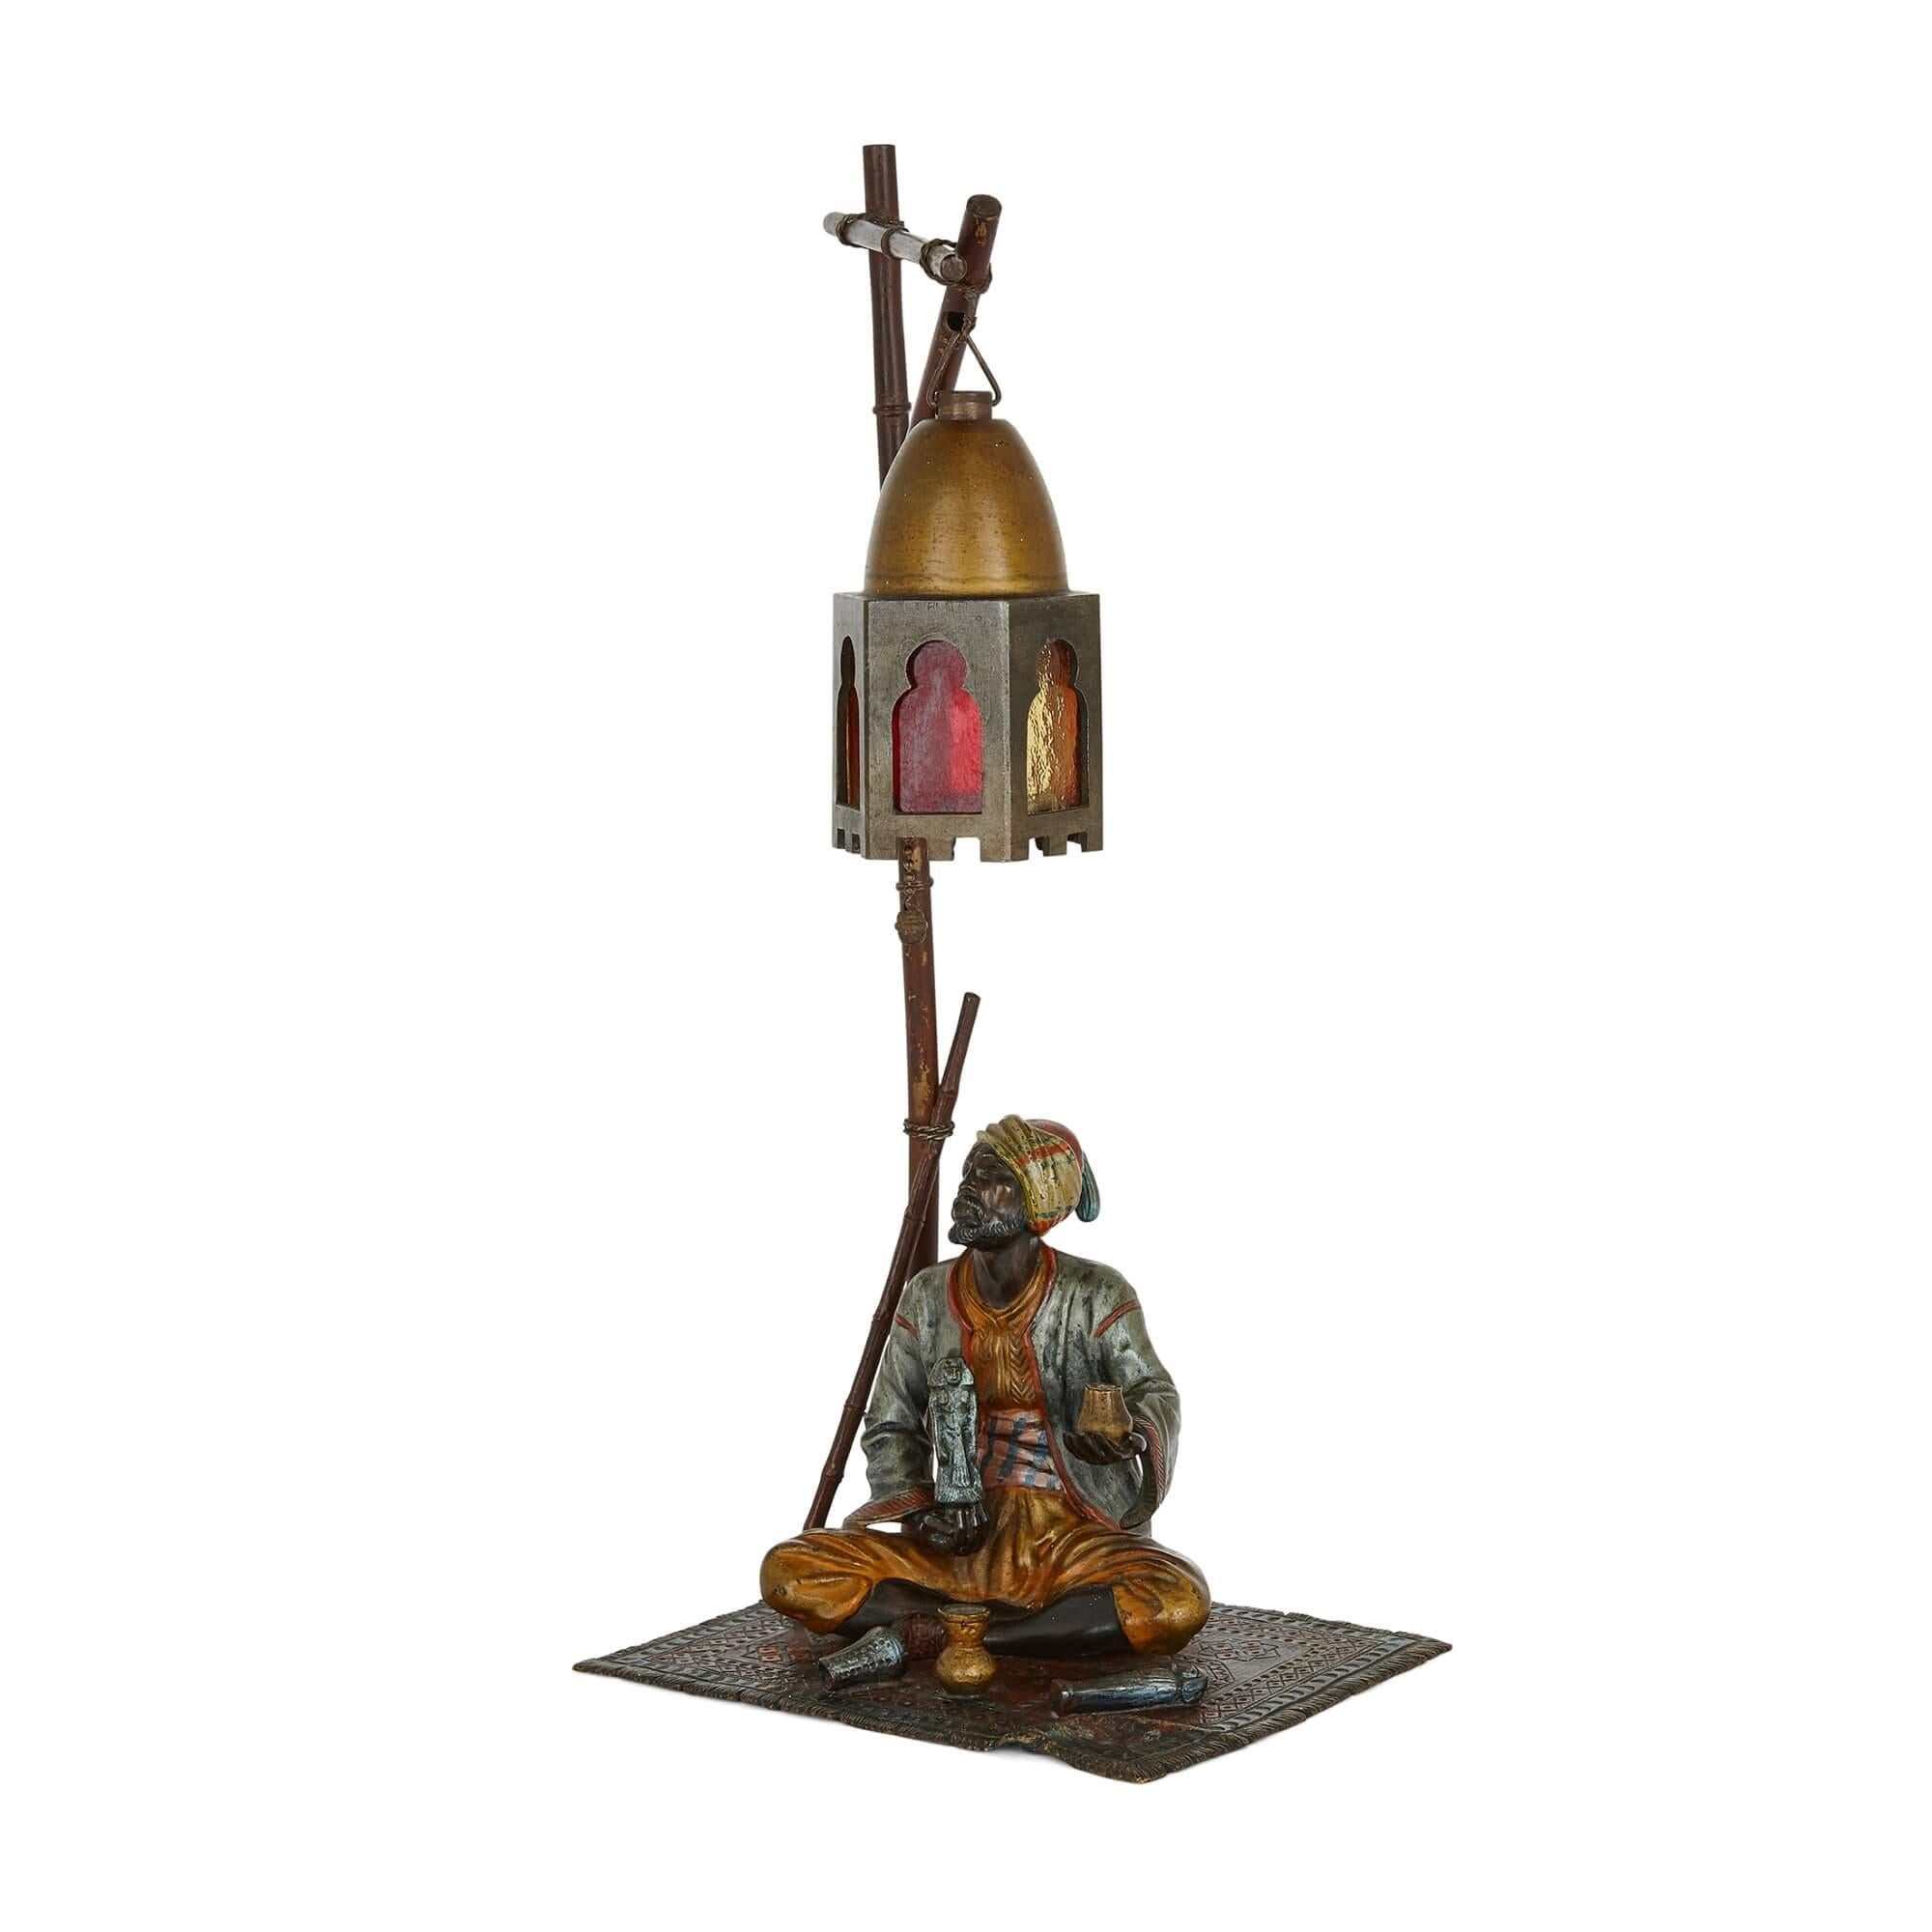 Lampe figurative viennoise orientaliste en bronze peint à froid
Autrichien, vers 1910
Mesures : Hauteur 36 cm, largeur 13 cm, profondeur 16 cm

Cette lampe en bronze est fabriquée dans le style orientaliste viennois qui prévalait au début du